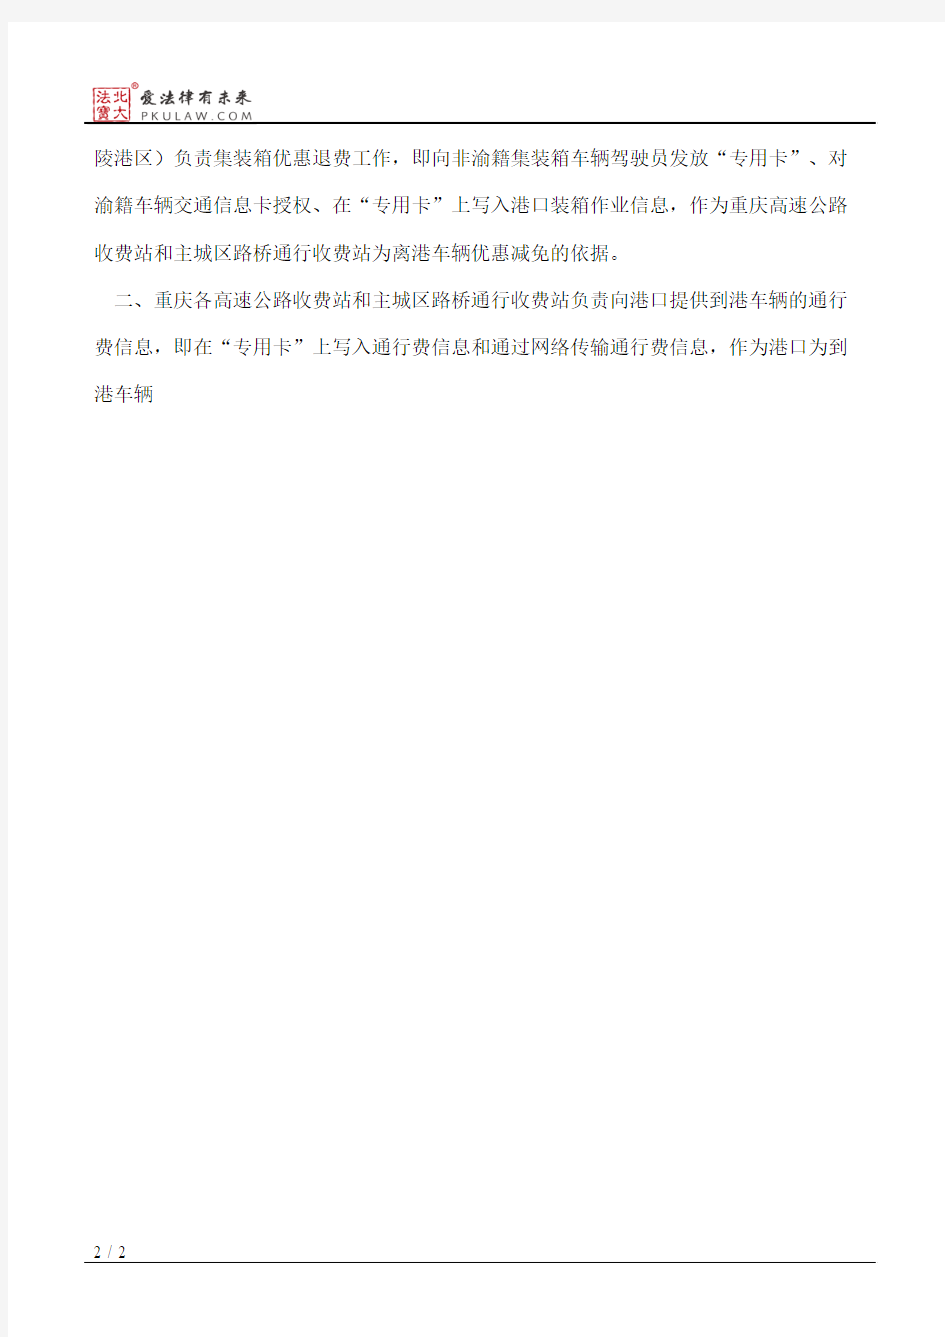 重庆市物价局关于集装箱车辆优惠退费操作规程的通知